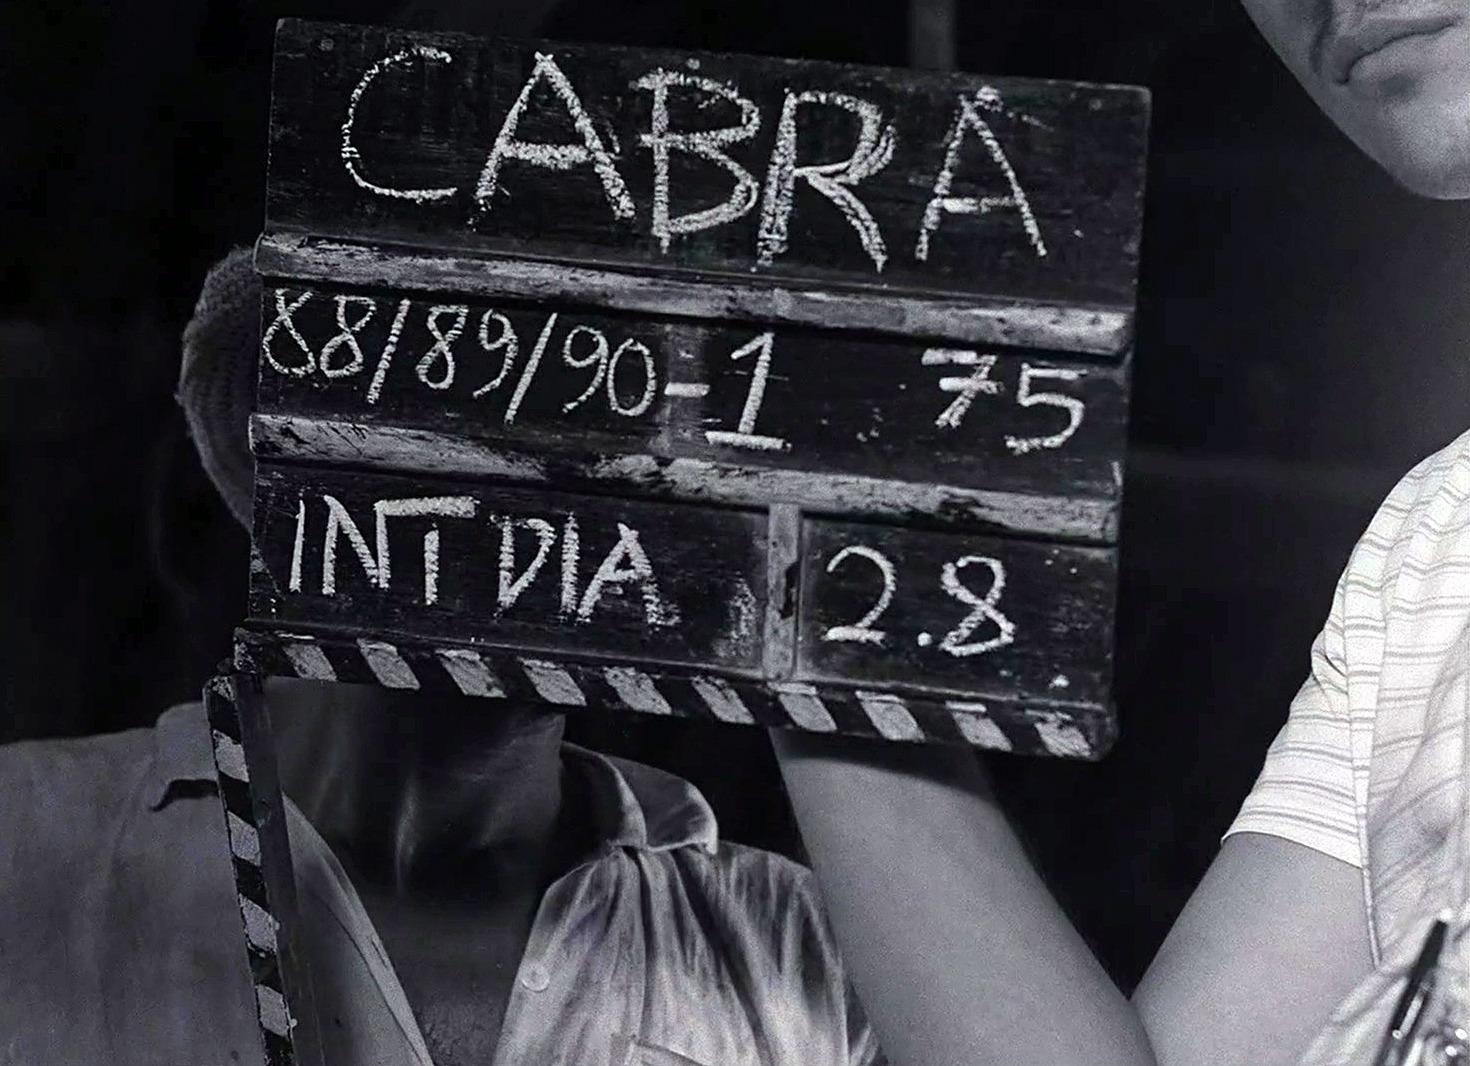 IMS publica roteiro original do filme Cabra marcado para morrer, de Eduardo Coutinho, em versão ebook gratuita